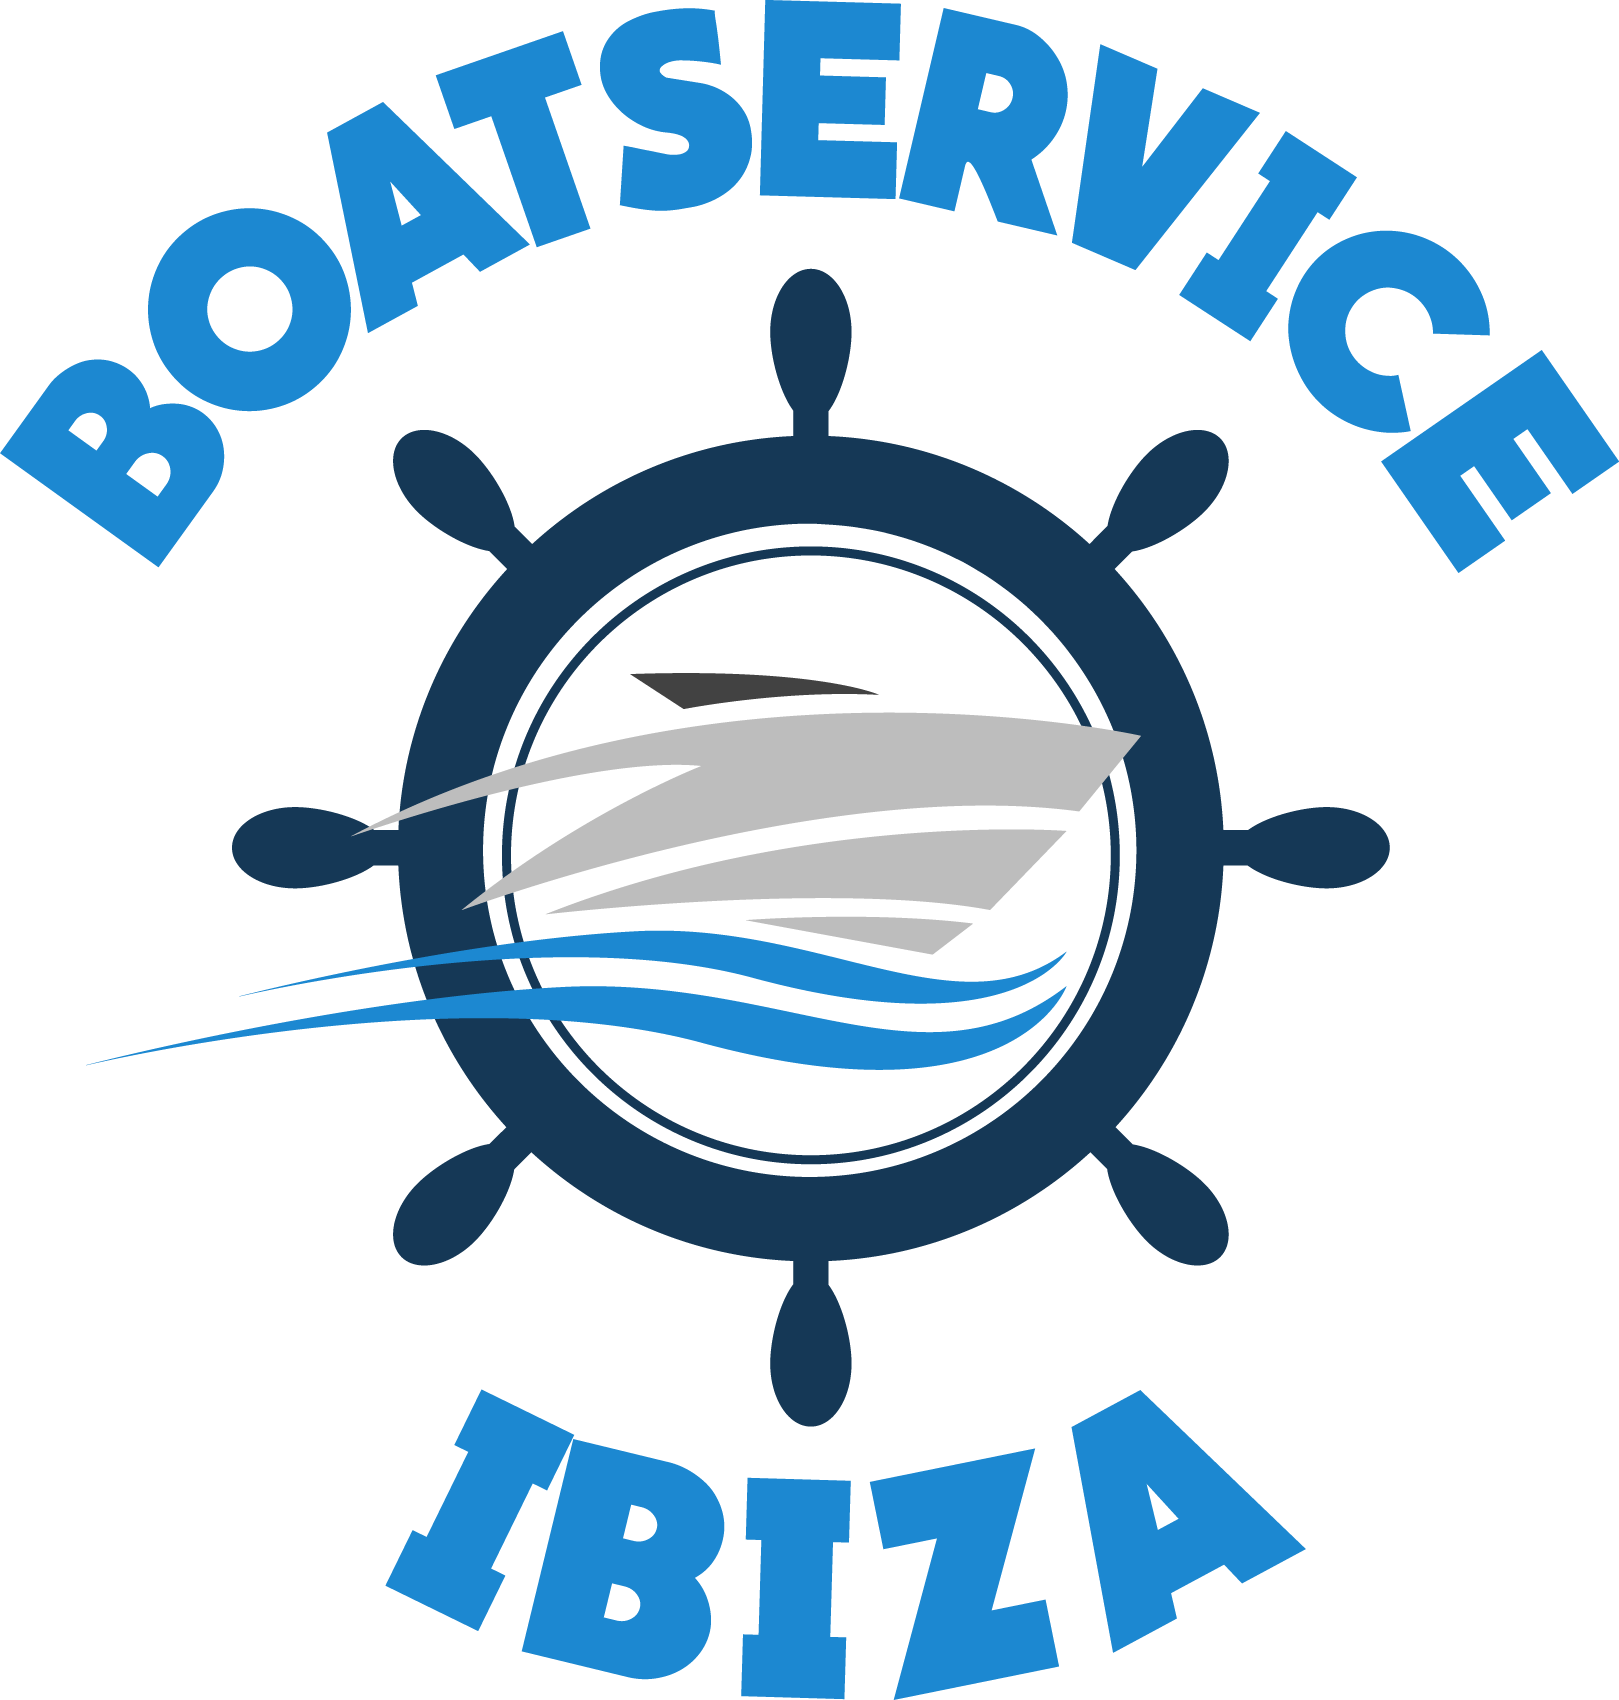 BOAT SERVICE IBIZA